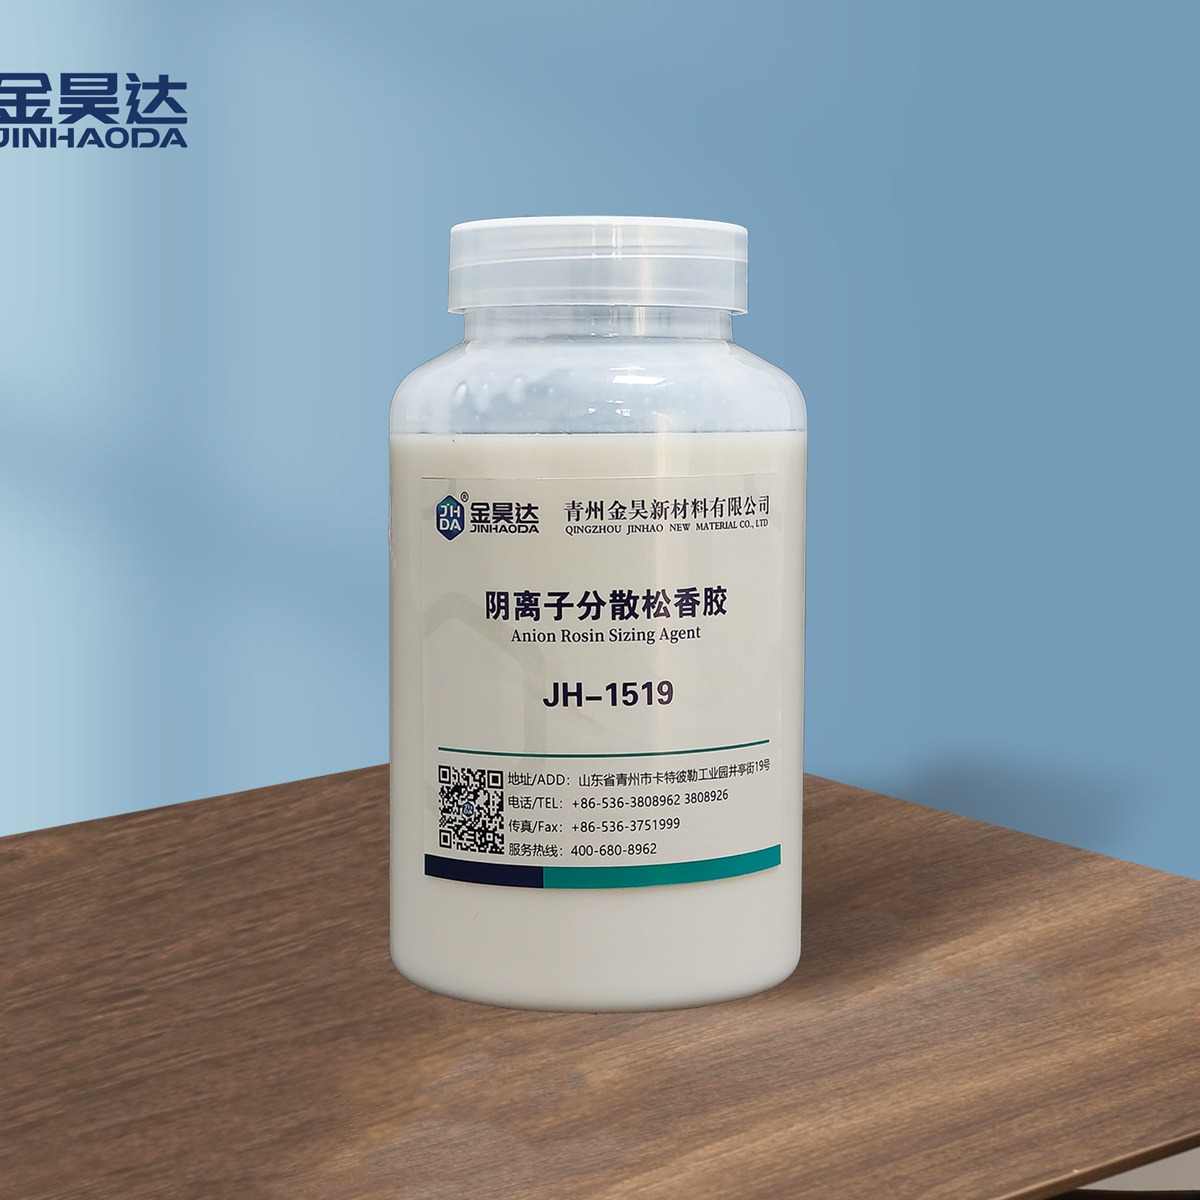 JH-1519阴离子松香胶 生产成本低 稳定效果好 阴离子松香胶乳液  质量保证  欢迎致电  山东金昊